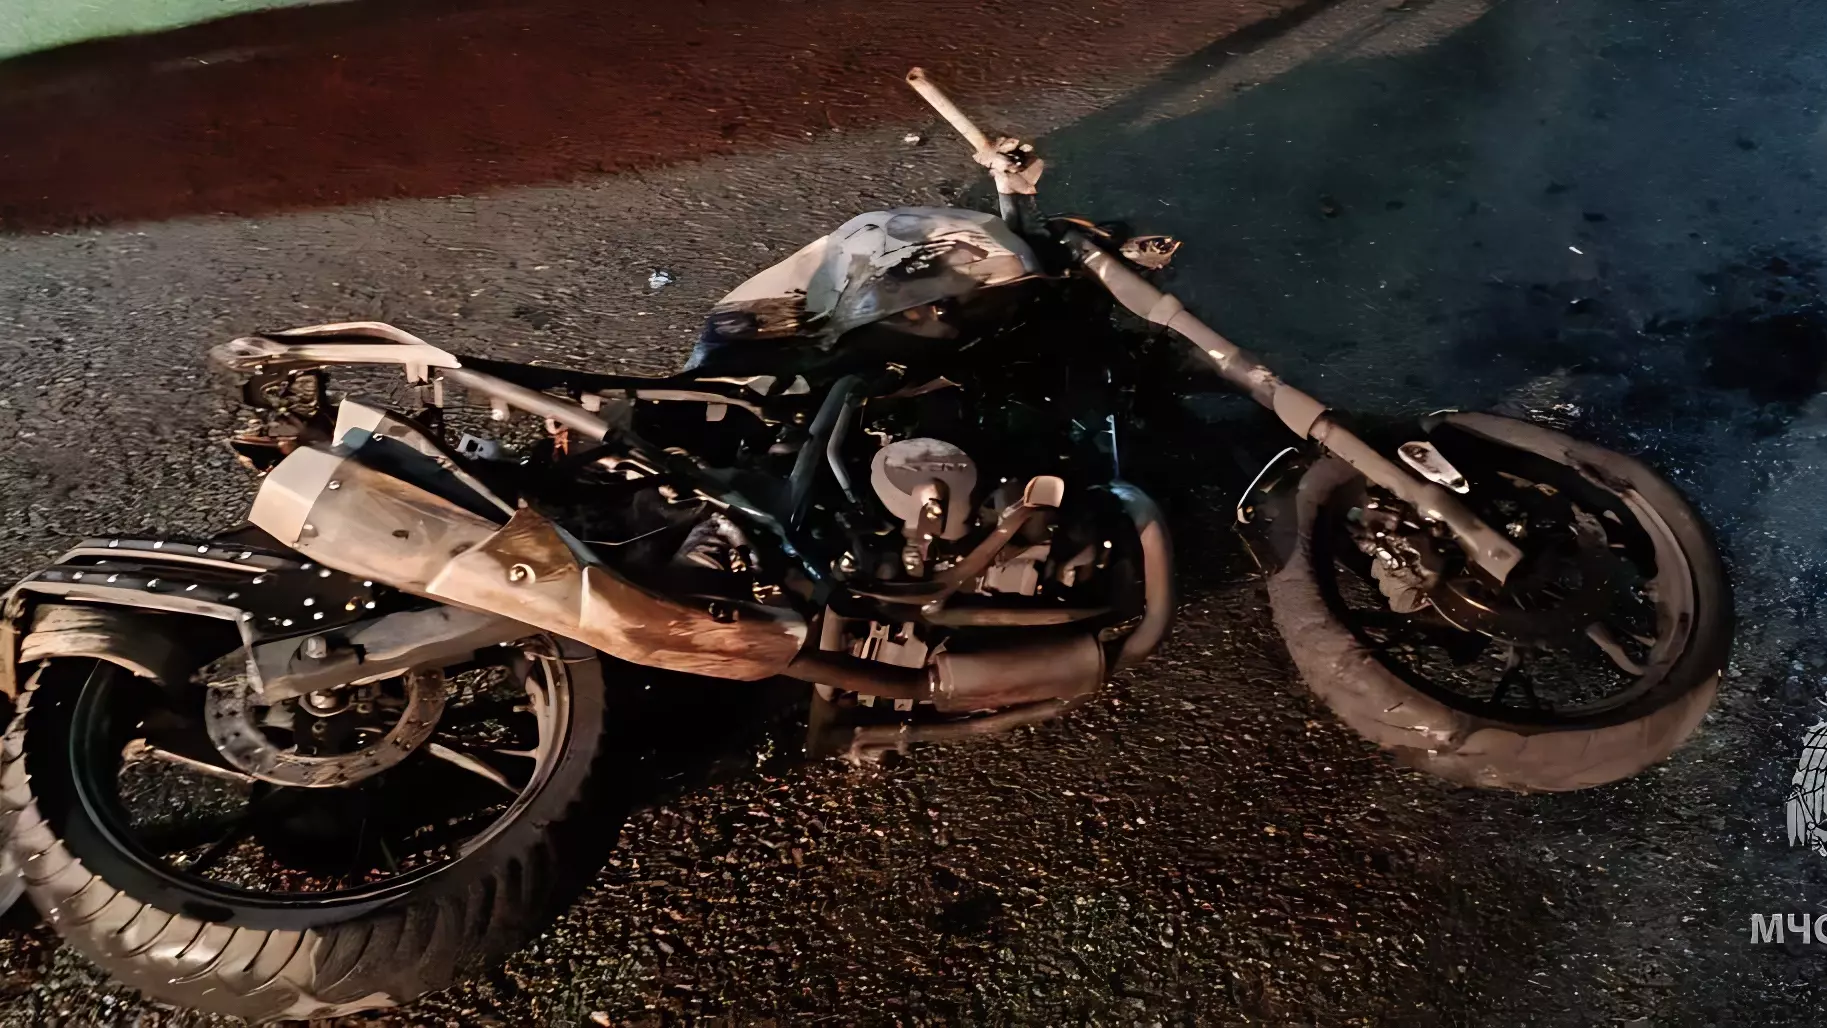 Мотоцикл загорелся во время ремонта, южноуралец получил ожоги